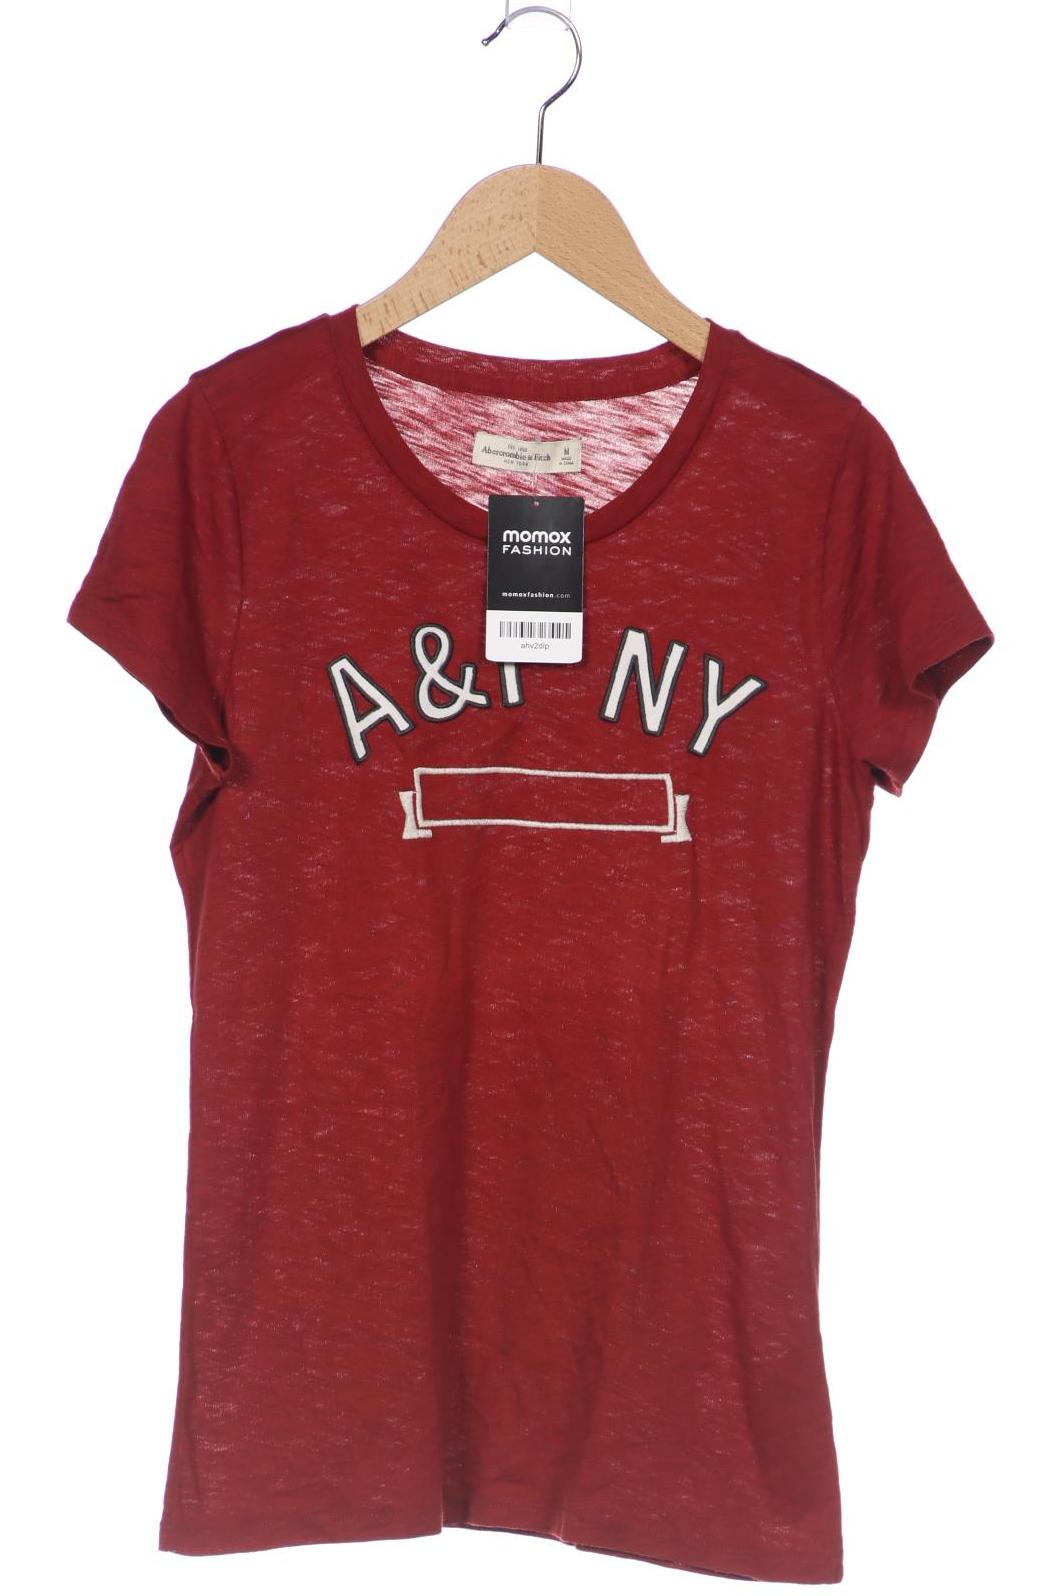 Abercrombie & Fitch Damen T-Shirt, bordeaux, Gr. 38 von Abercrombie & Fitch